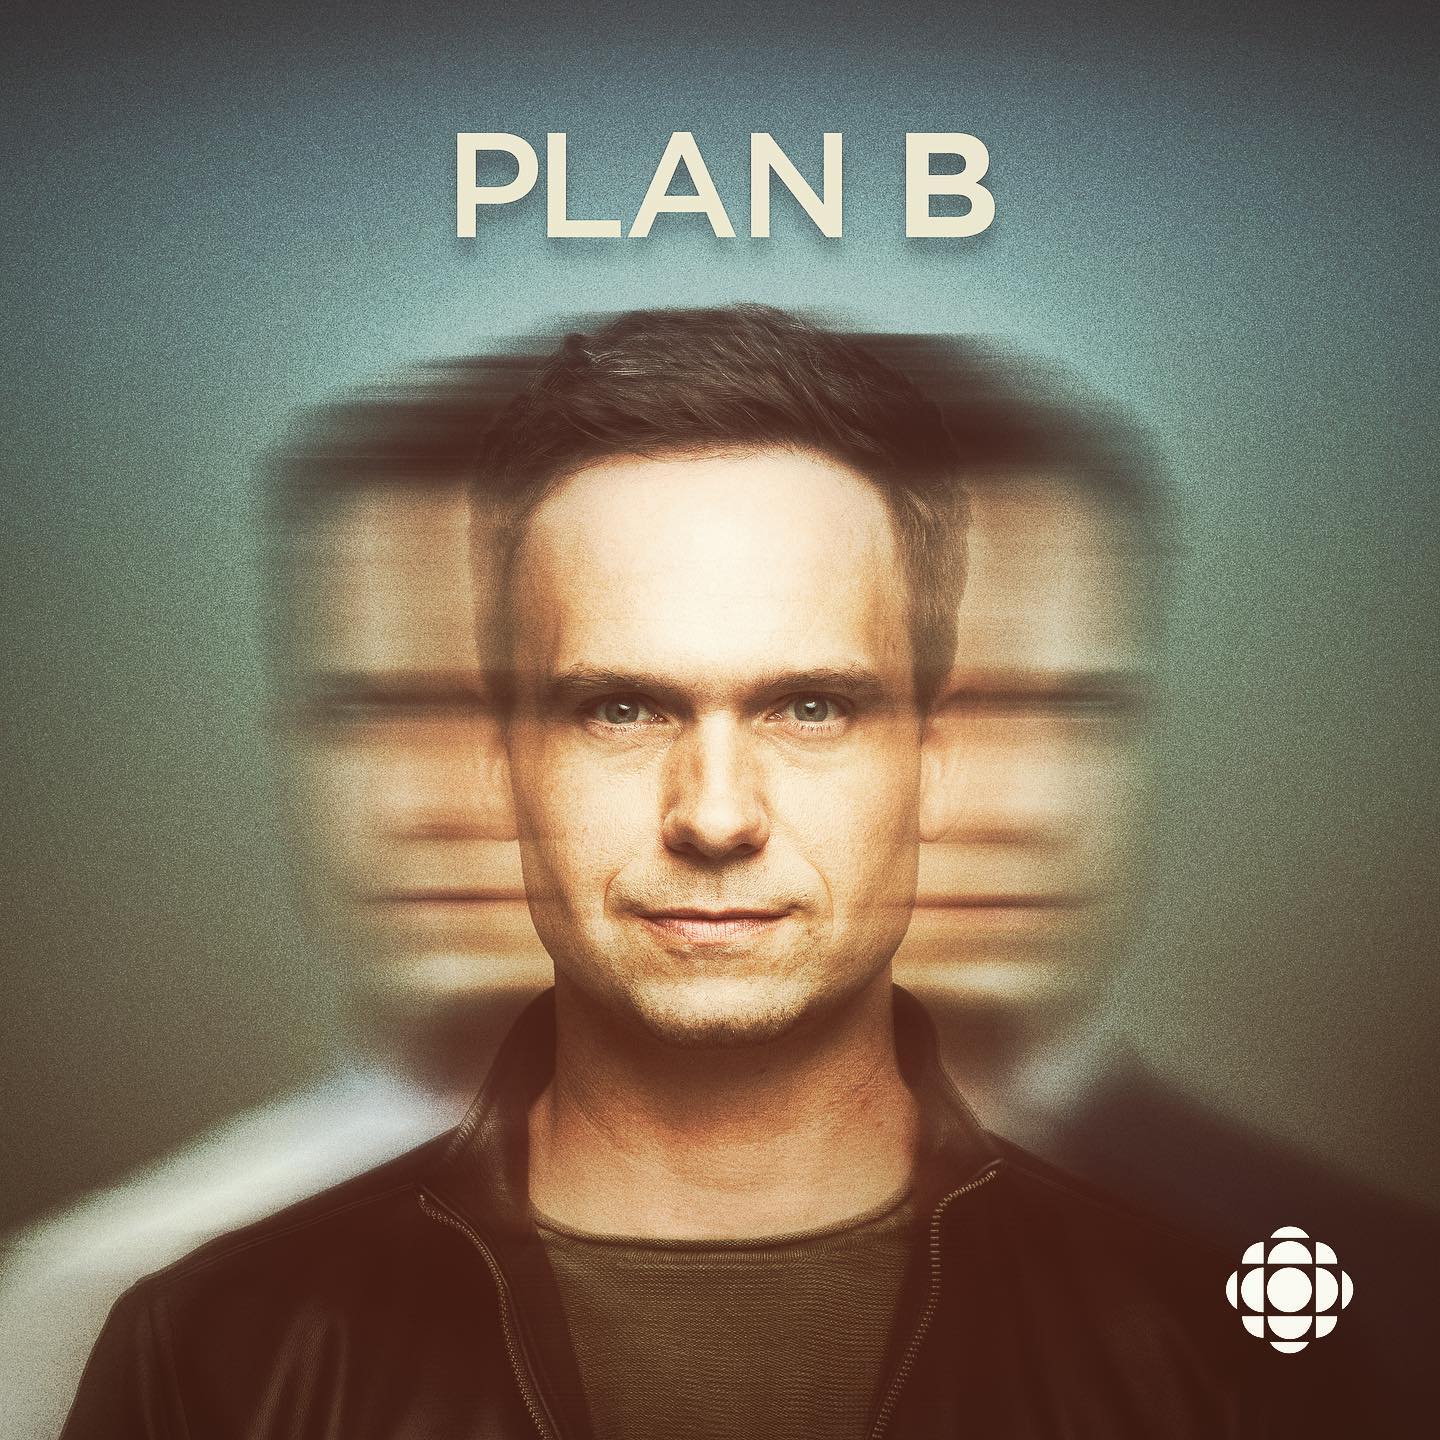 plan b season 2 episode 1